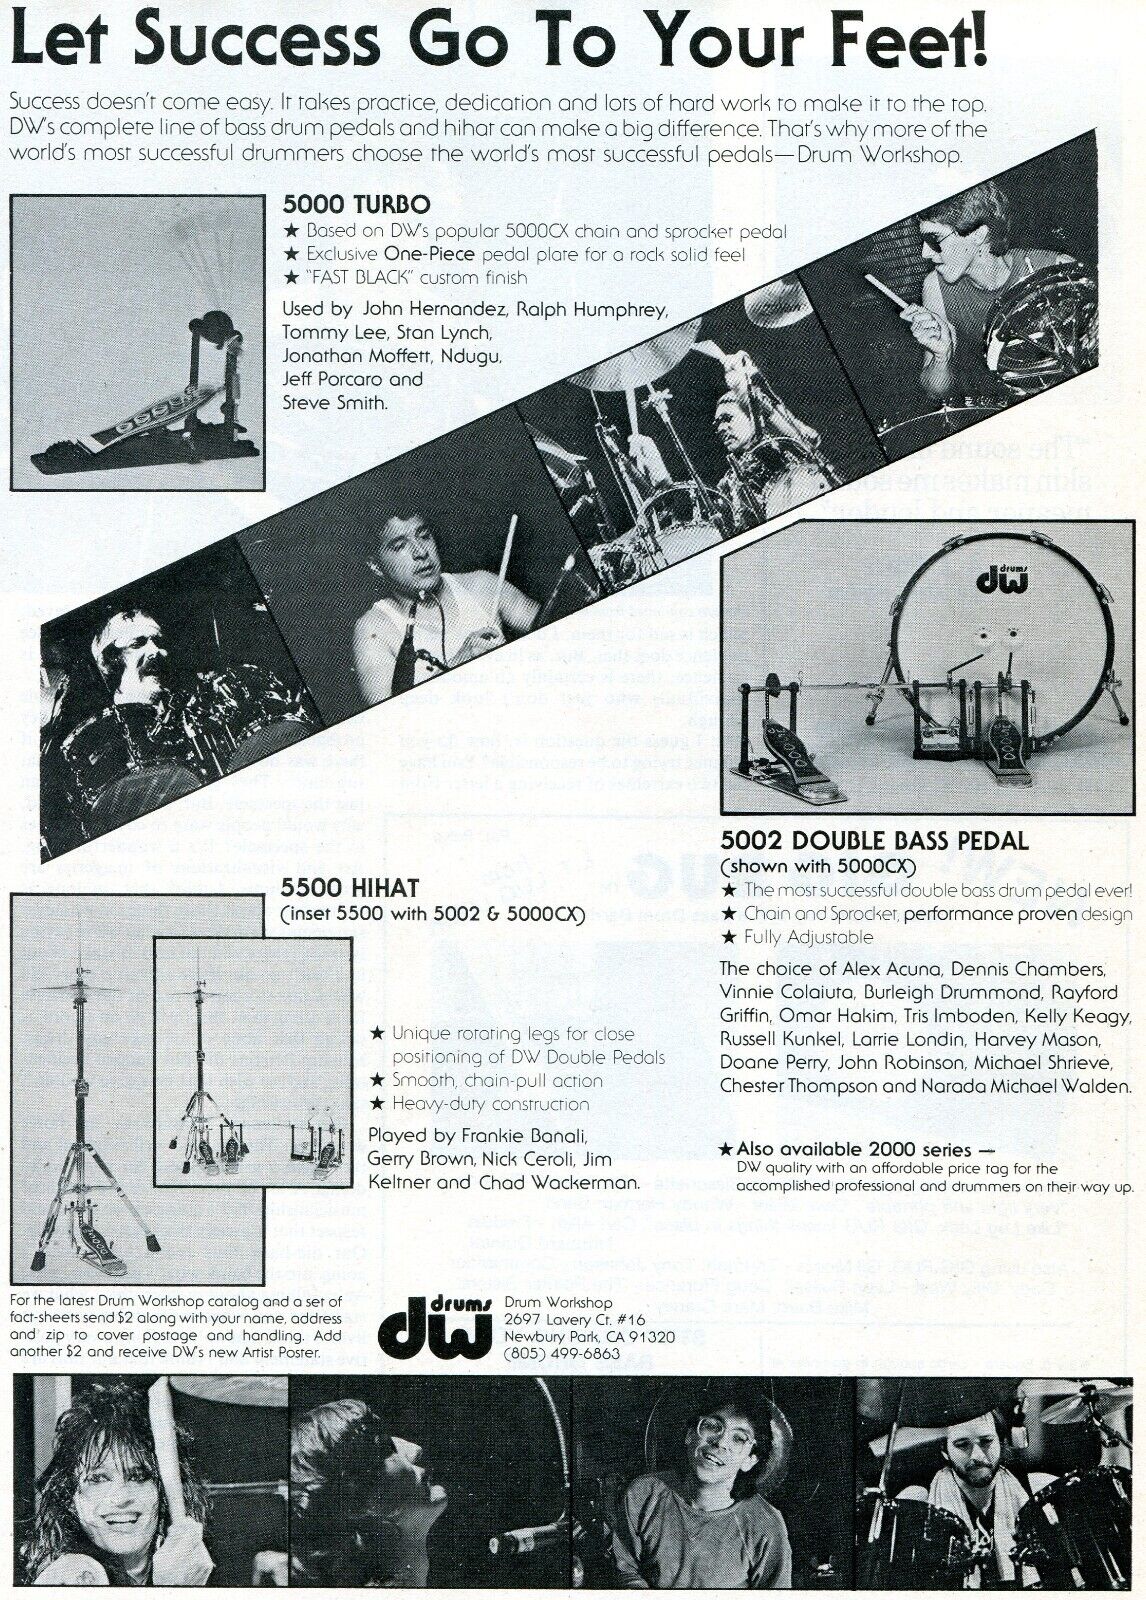 1984 Print Ad of DW 5000 Bass Drum Pedal w Tommy Lee, Jeff Porcaro, Stan Lynch